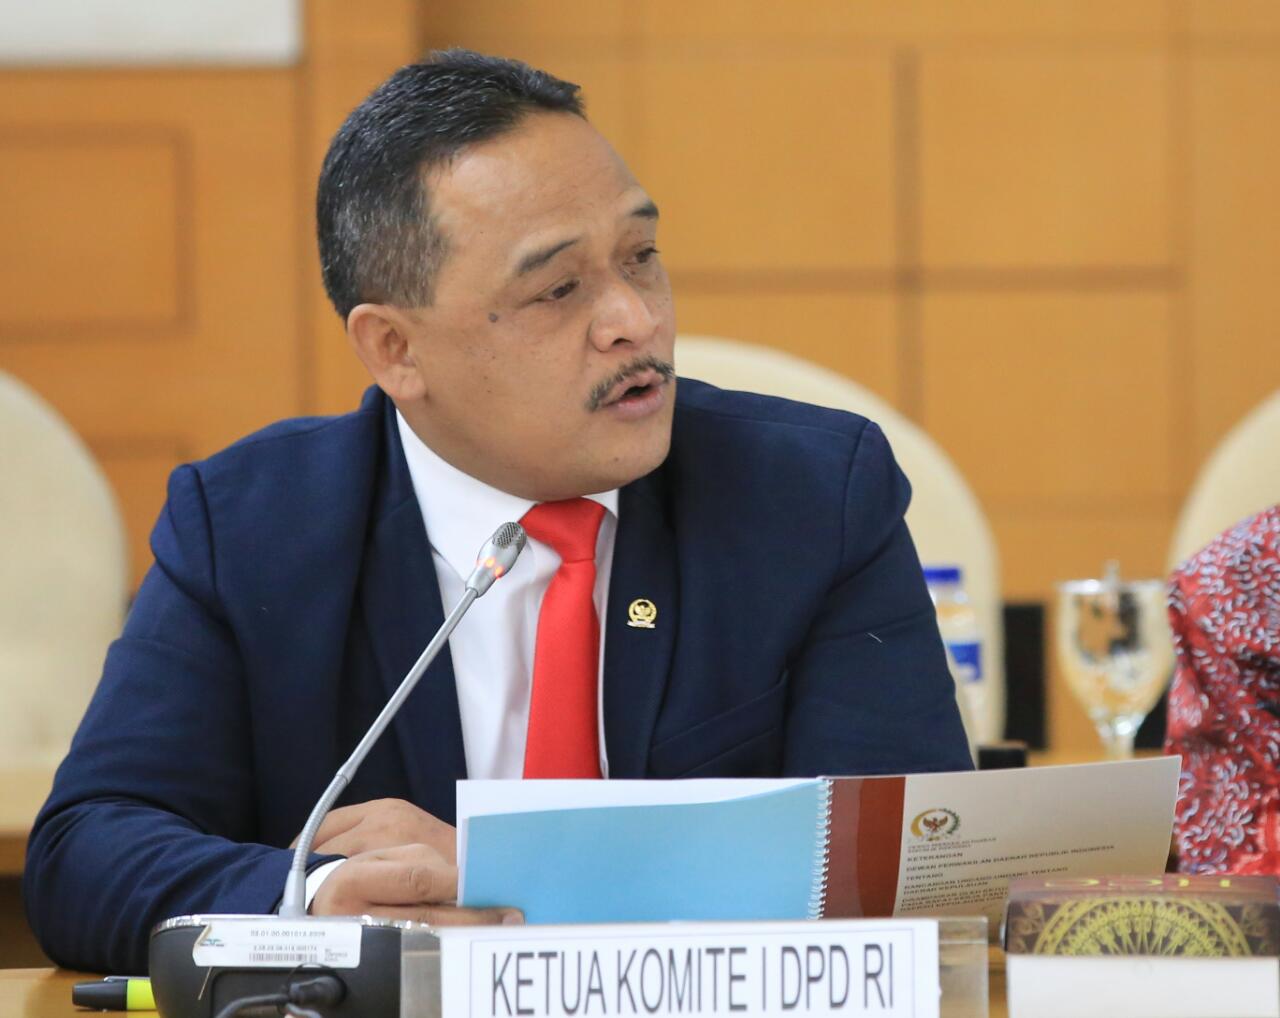 Kasus Meikarta, Ketua Komite I DPD RI: Pemkab Bekasi dan Lippo Group Telah Melakukan Kejahatan Pertanahan - Desapedia